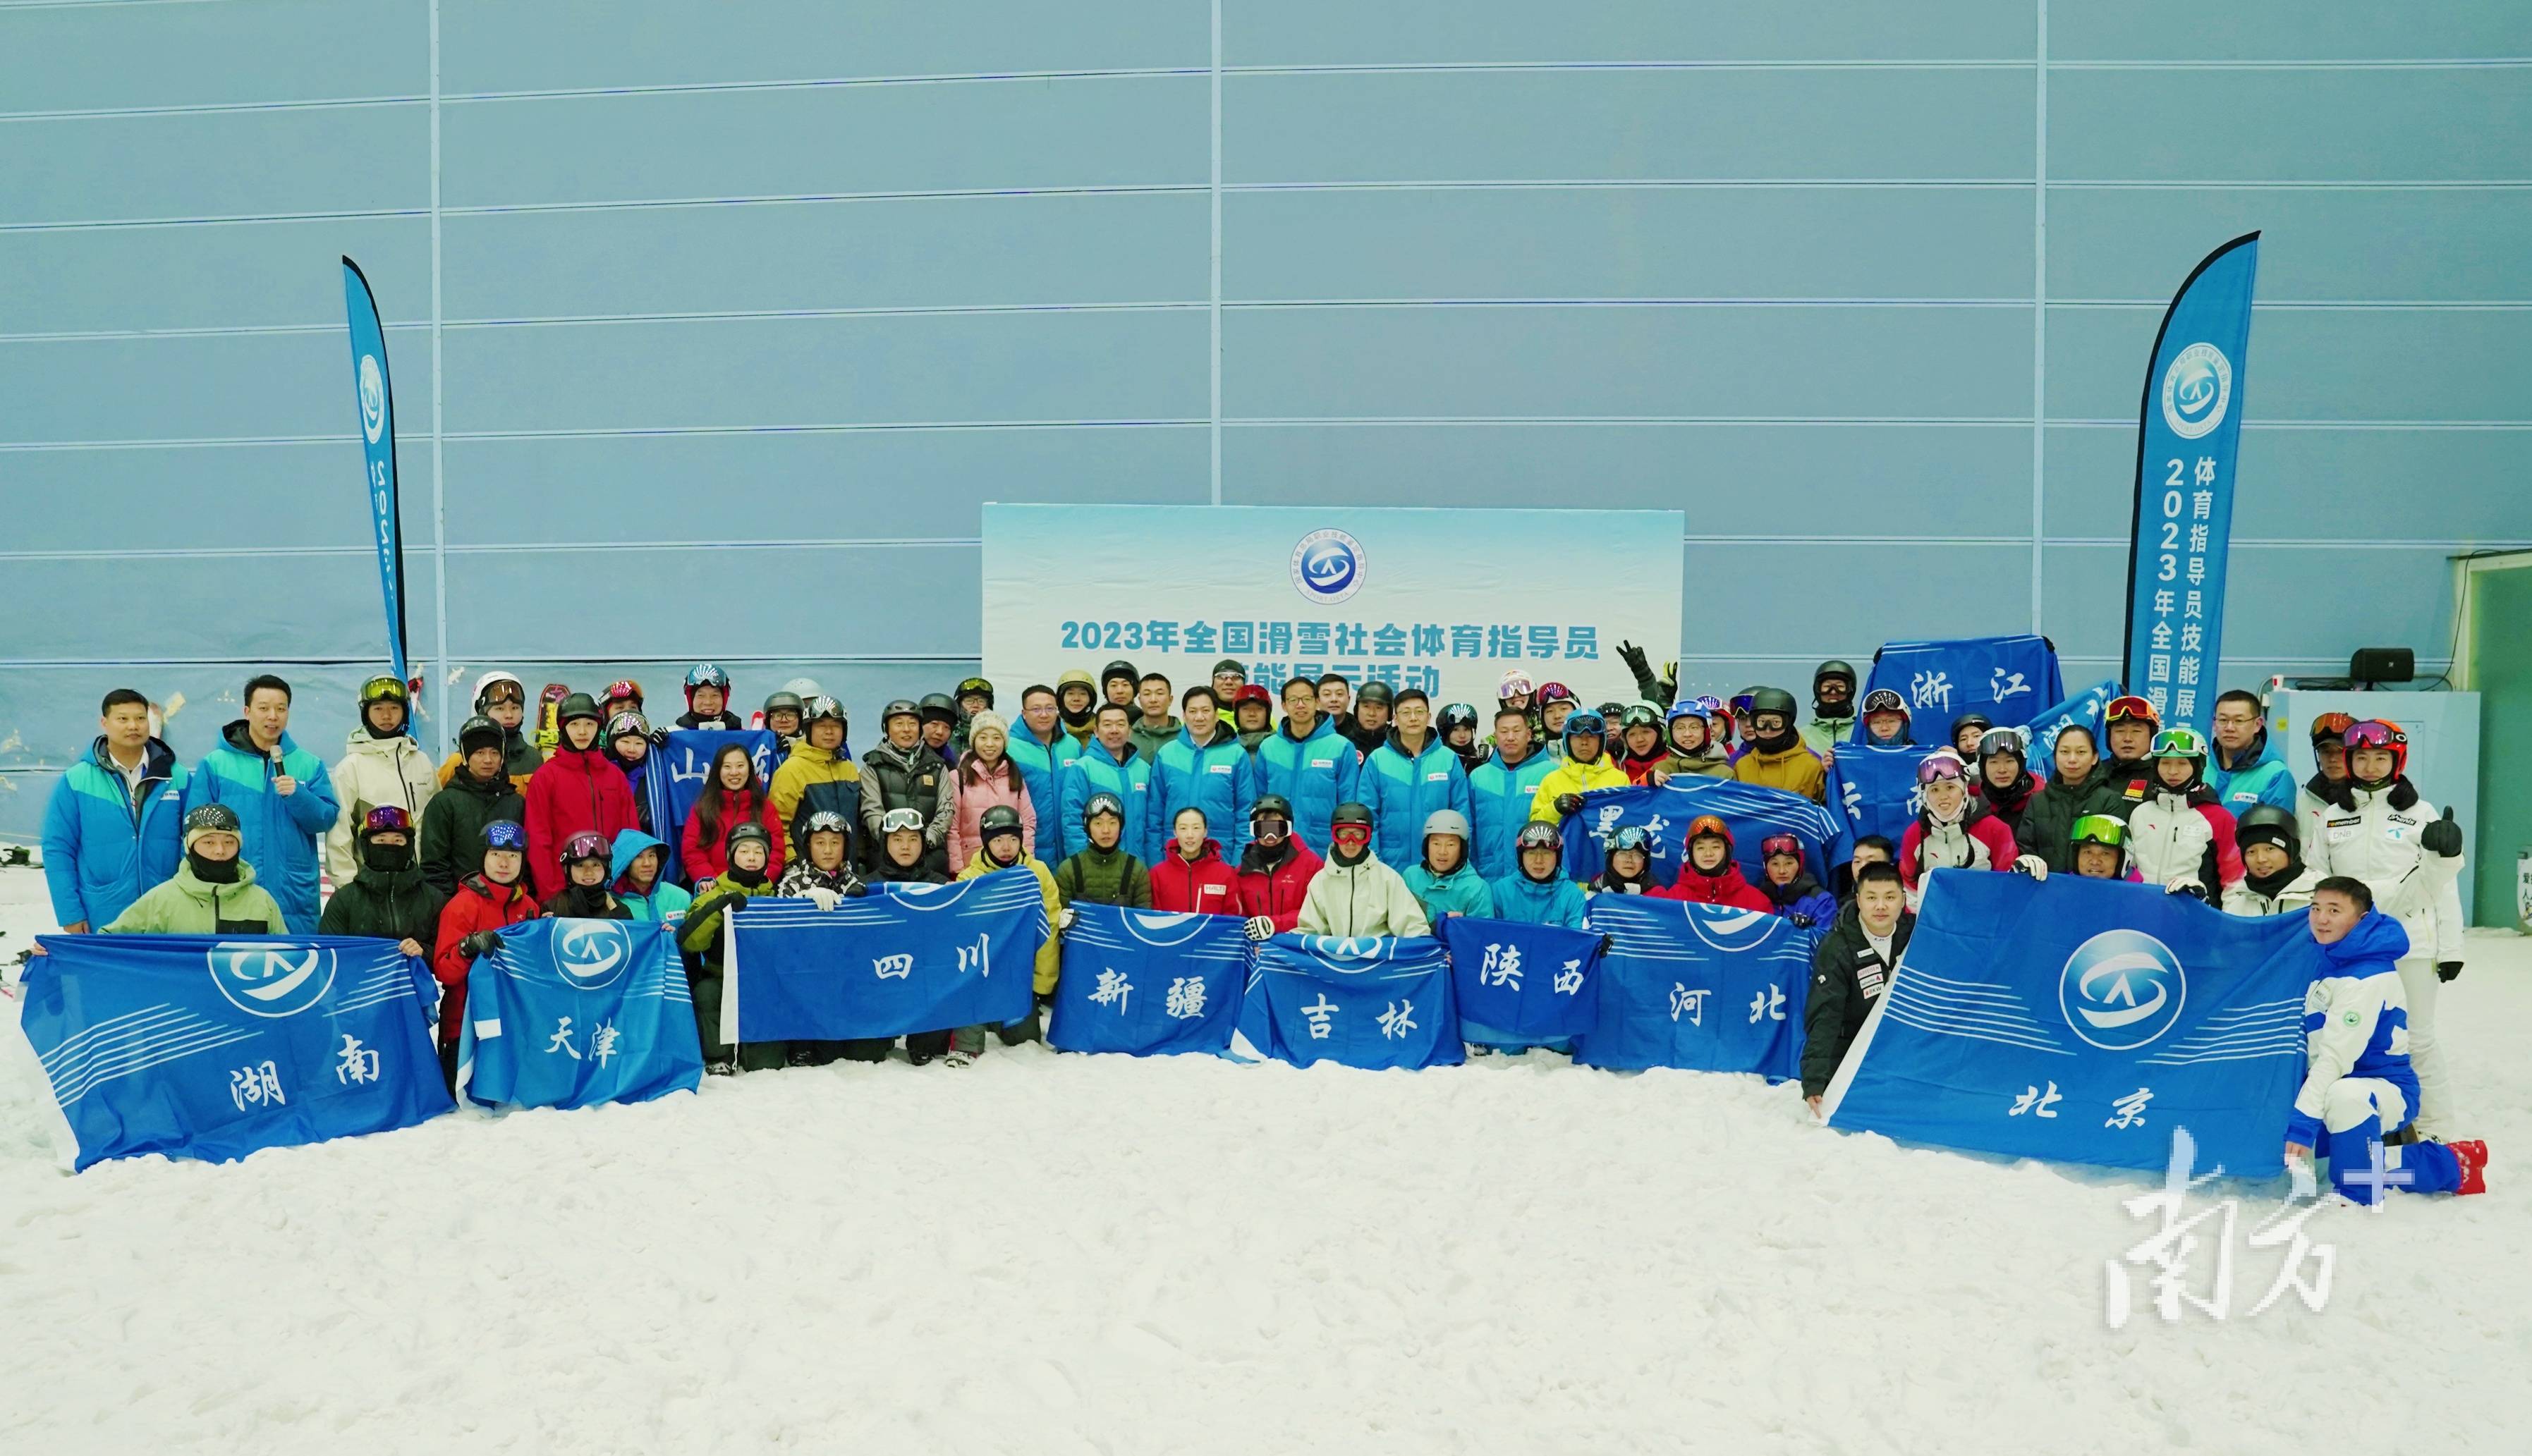 体育:滑雪社会体育指导员技能展示交流活动羊城启幕